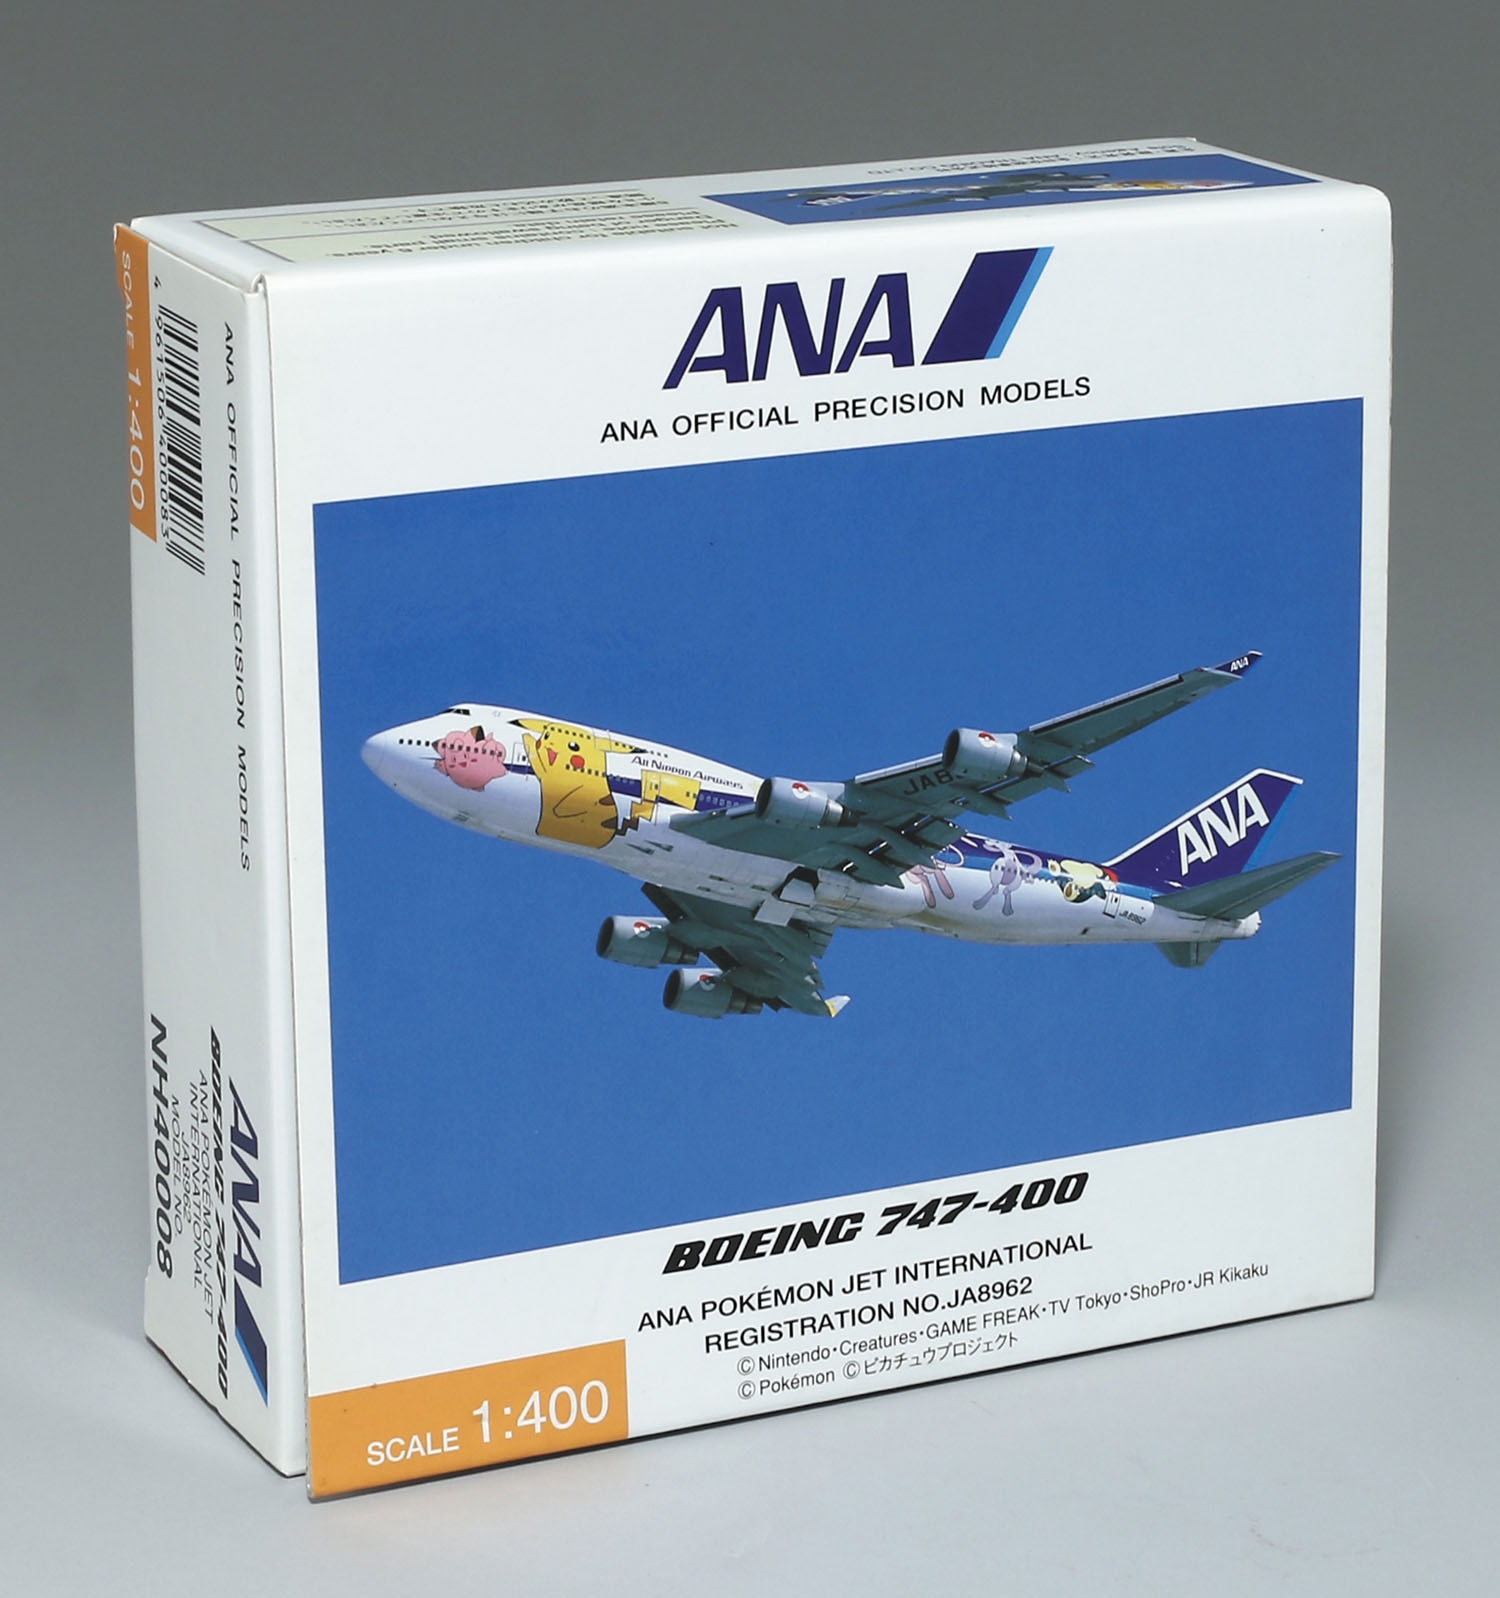 ANA 1/400 ポケモンジェット JA8962 BOEING 747-400